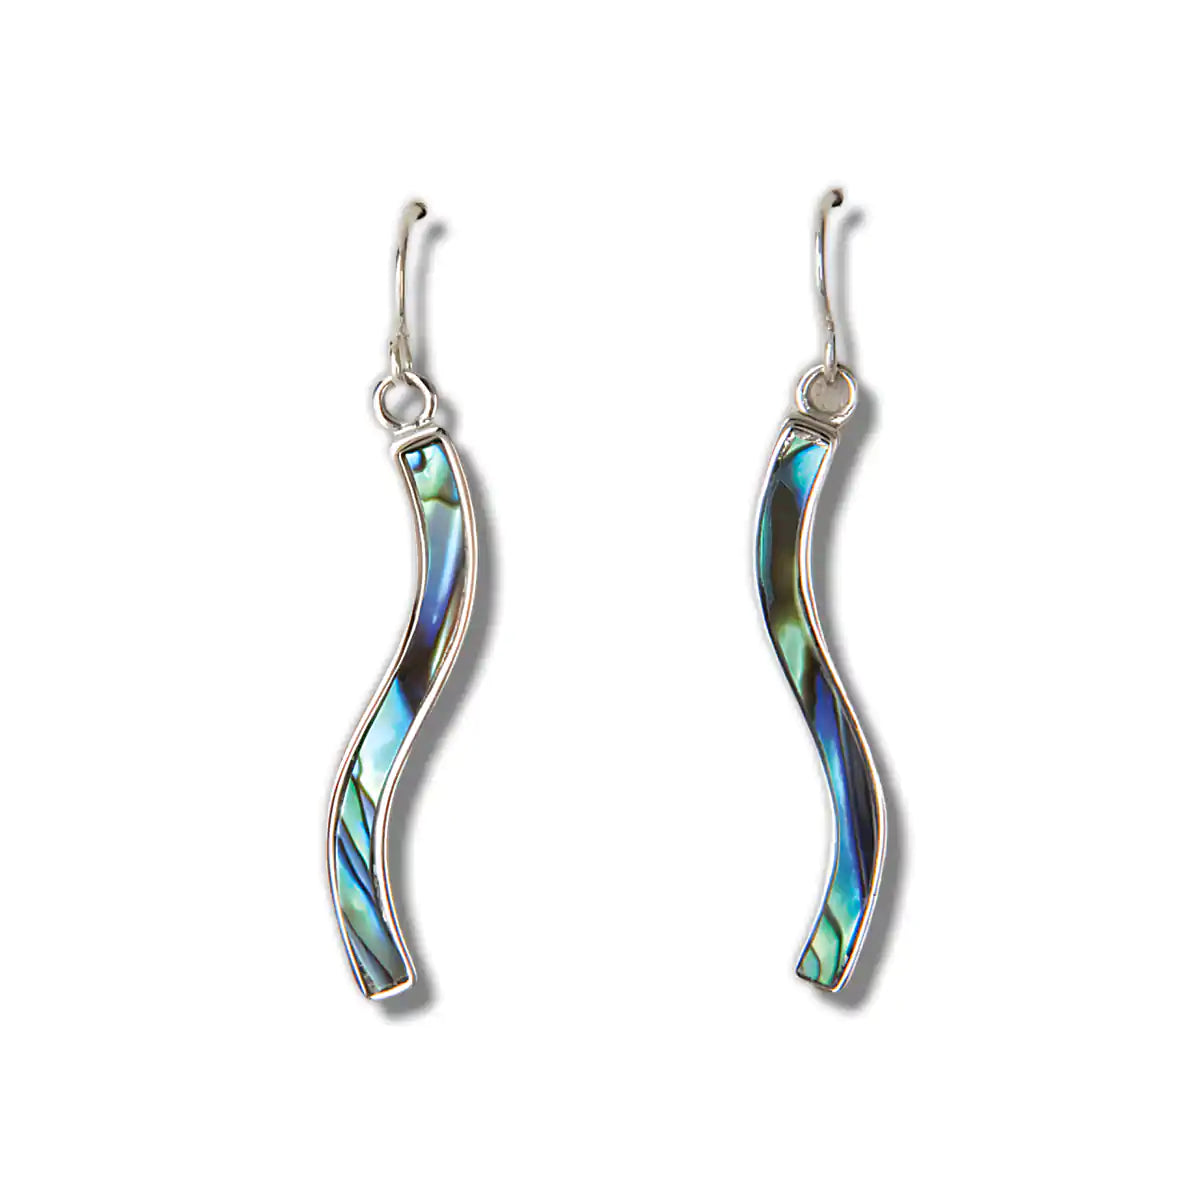 Glacier pearle riverbend earrings